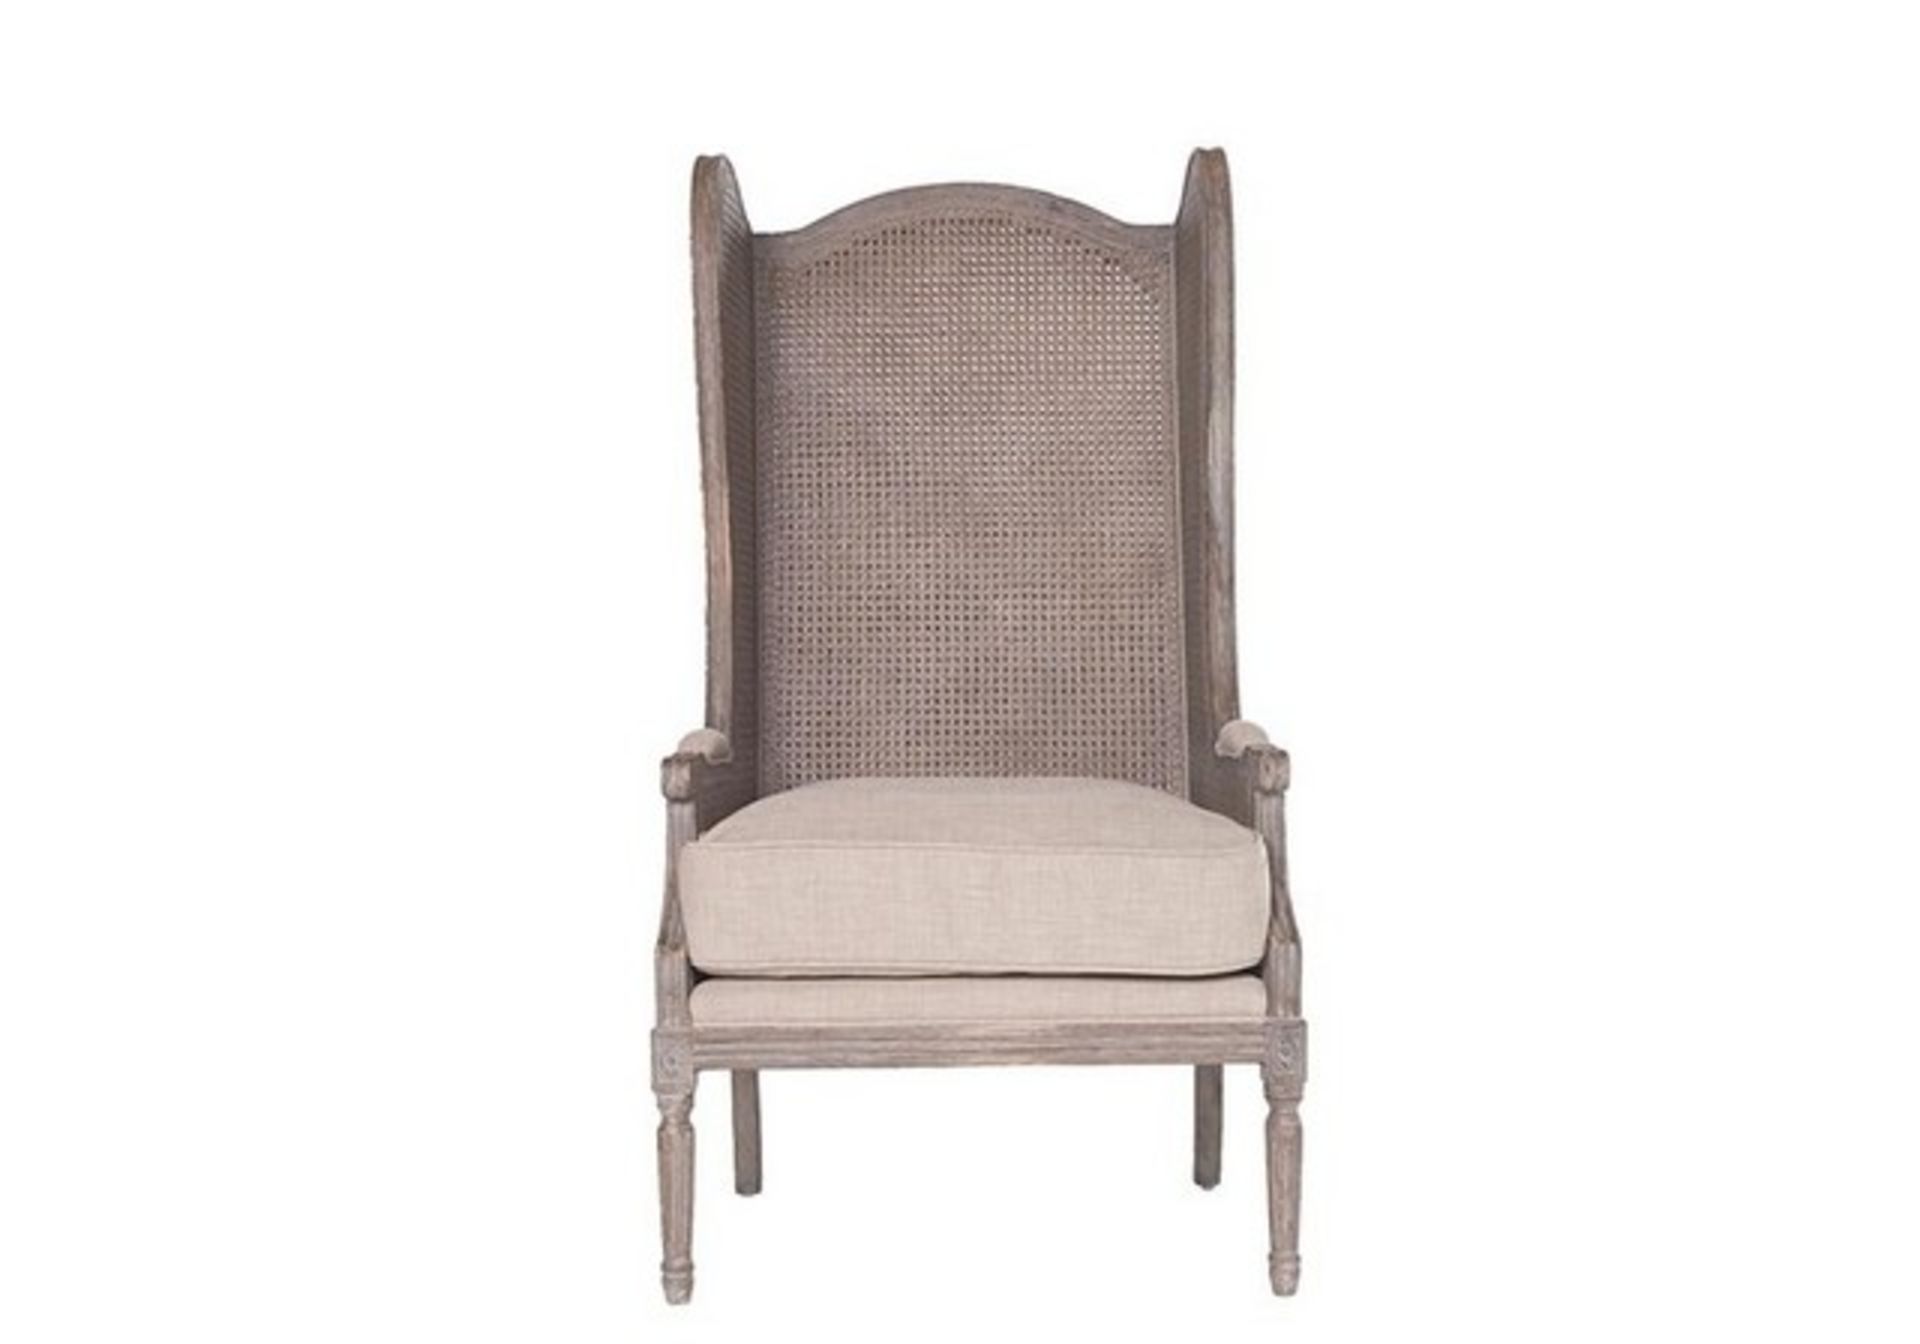 Santa Ynez Paso Chair - Image 2 of 2